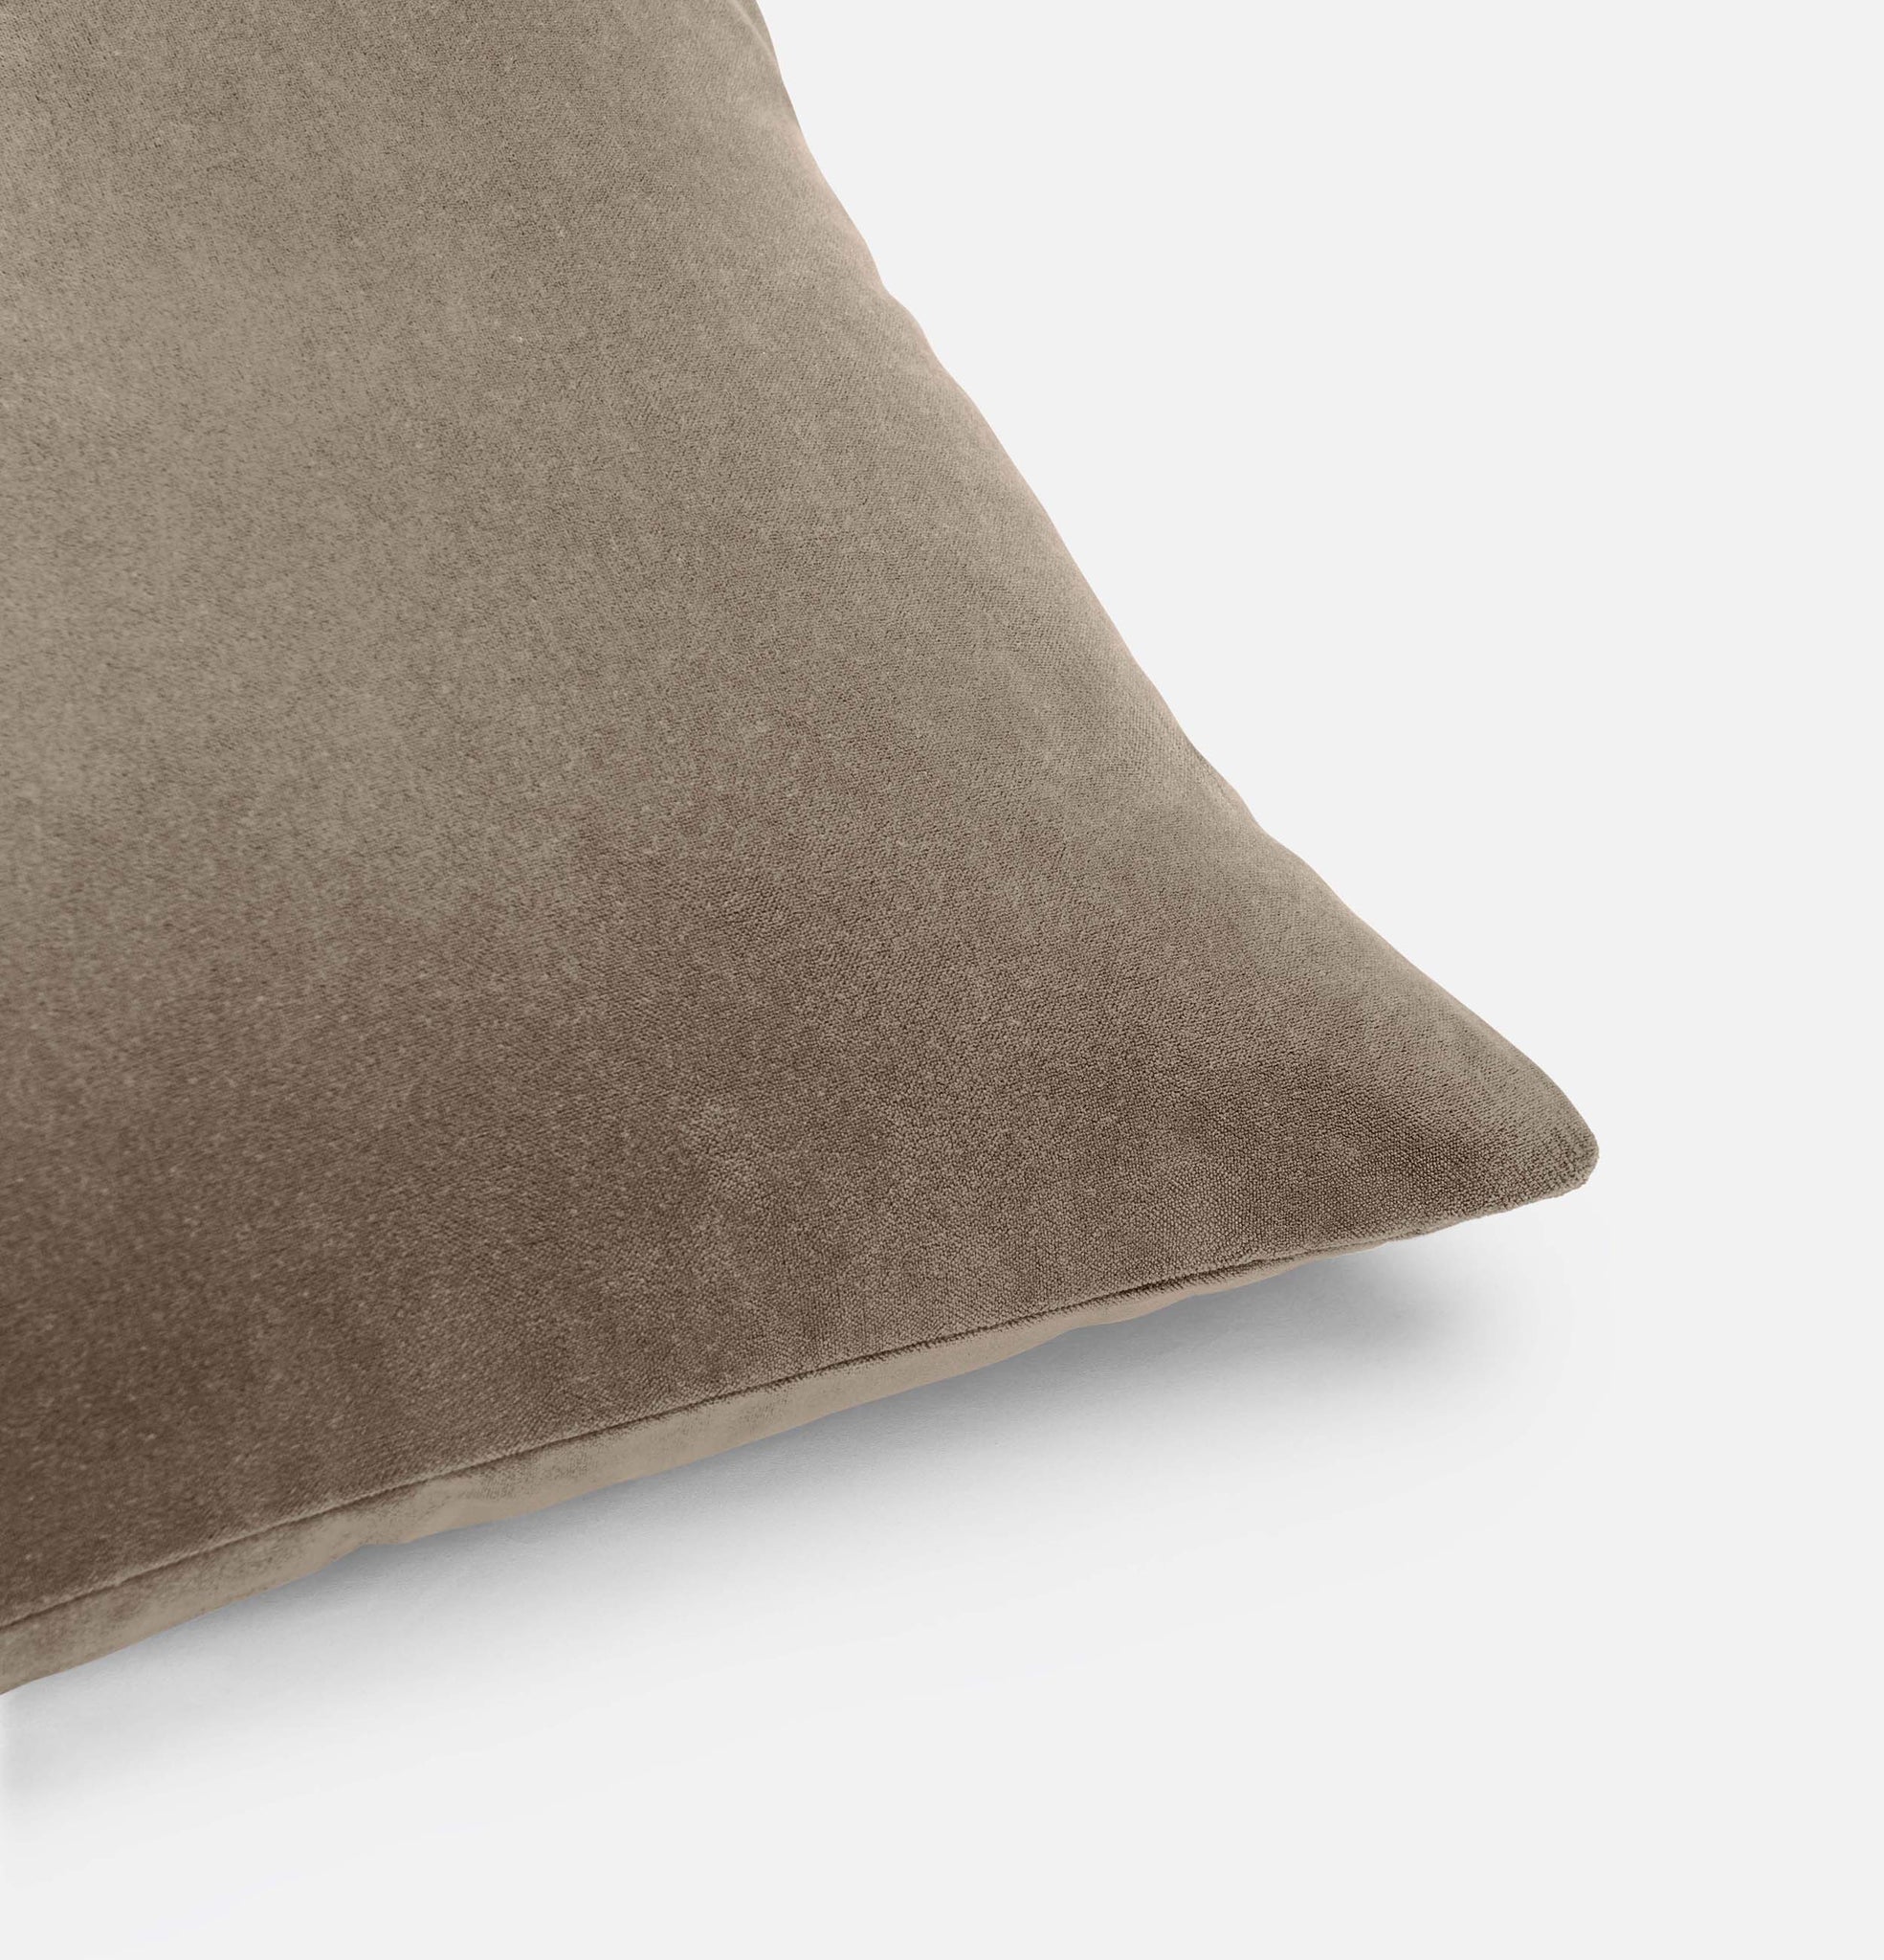 Corner detail of harvest taupe velvet cushion